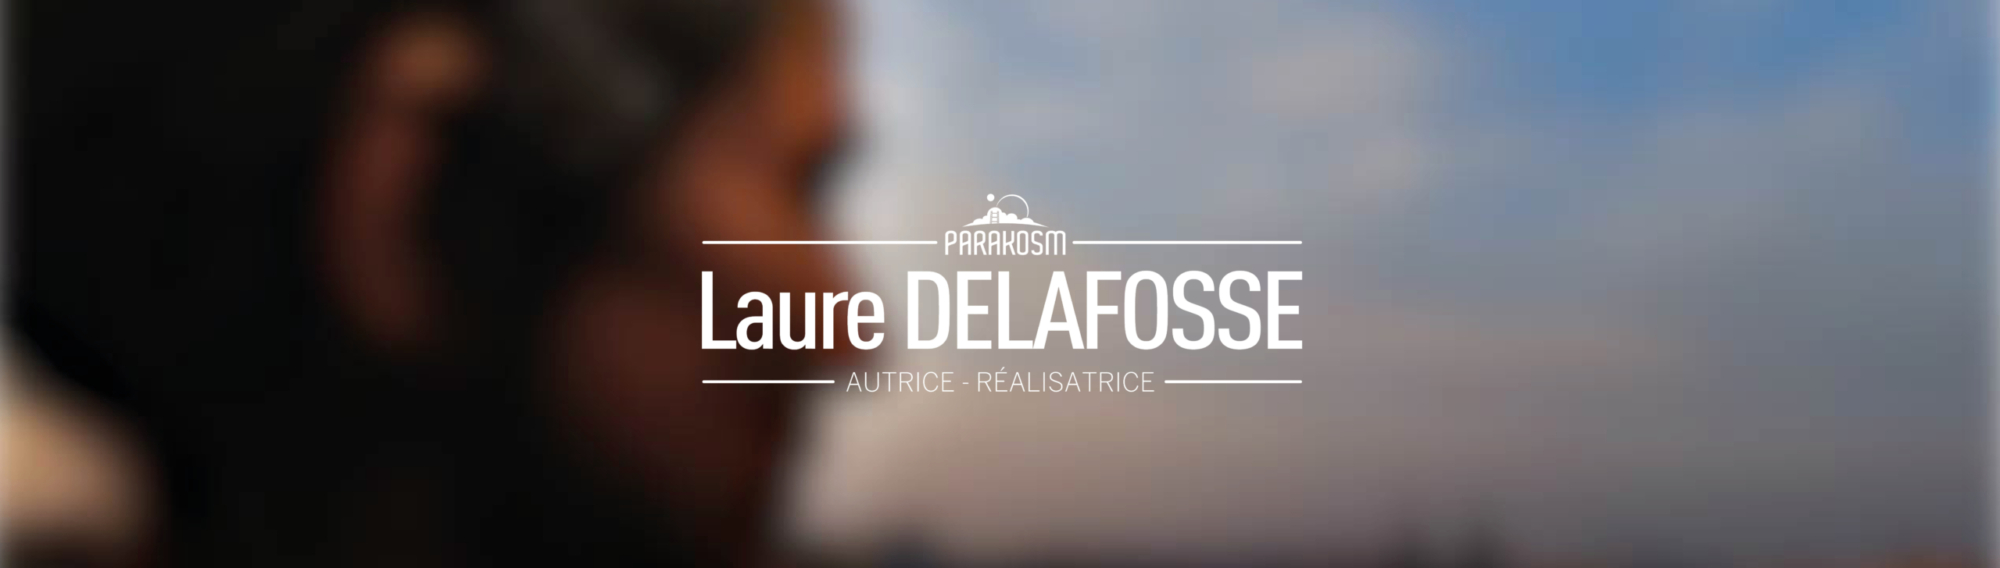 Laure Delafosse